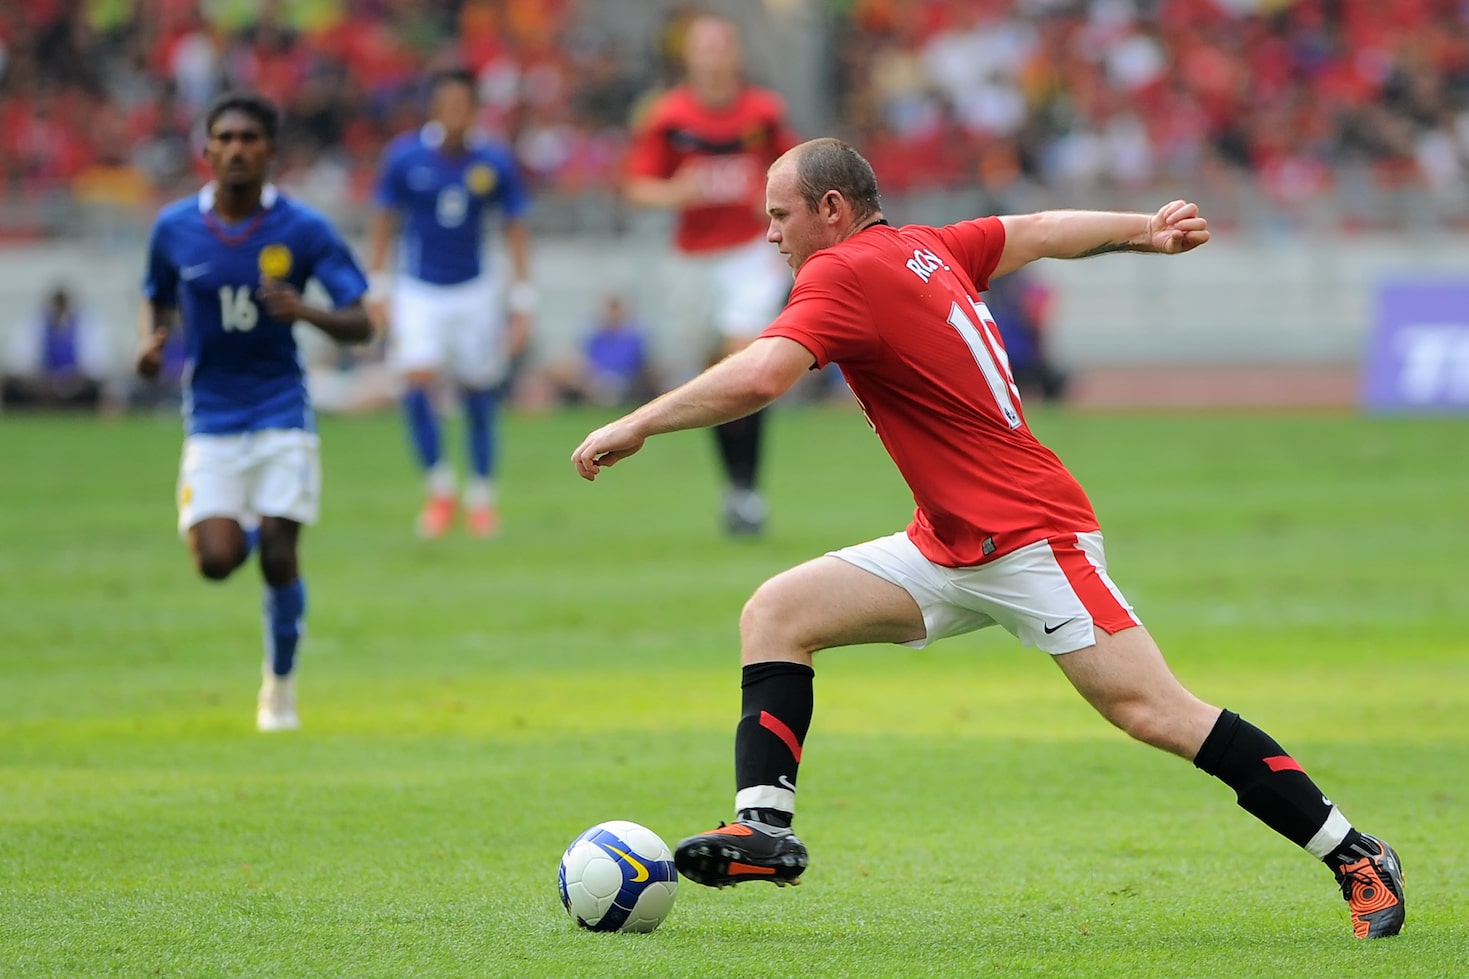 Wayne Rooney dribbling as number 10 in soccer